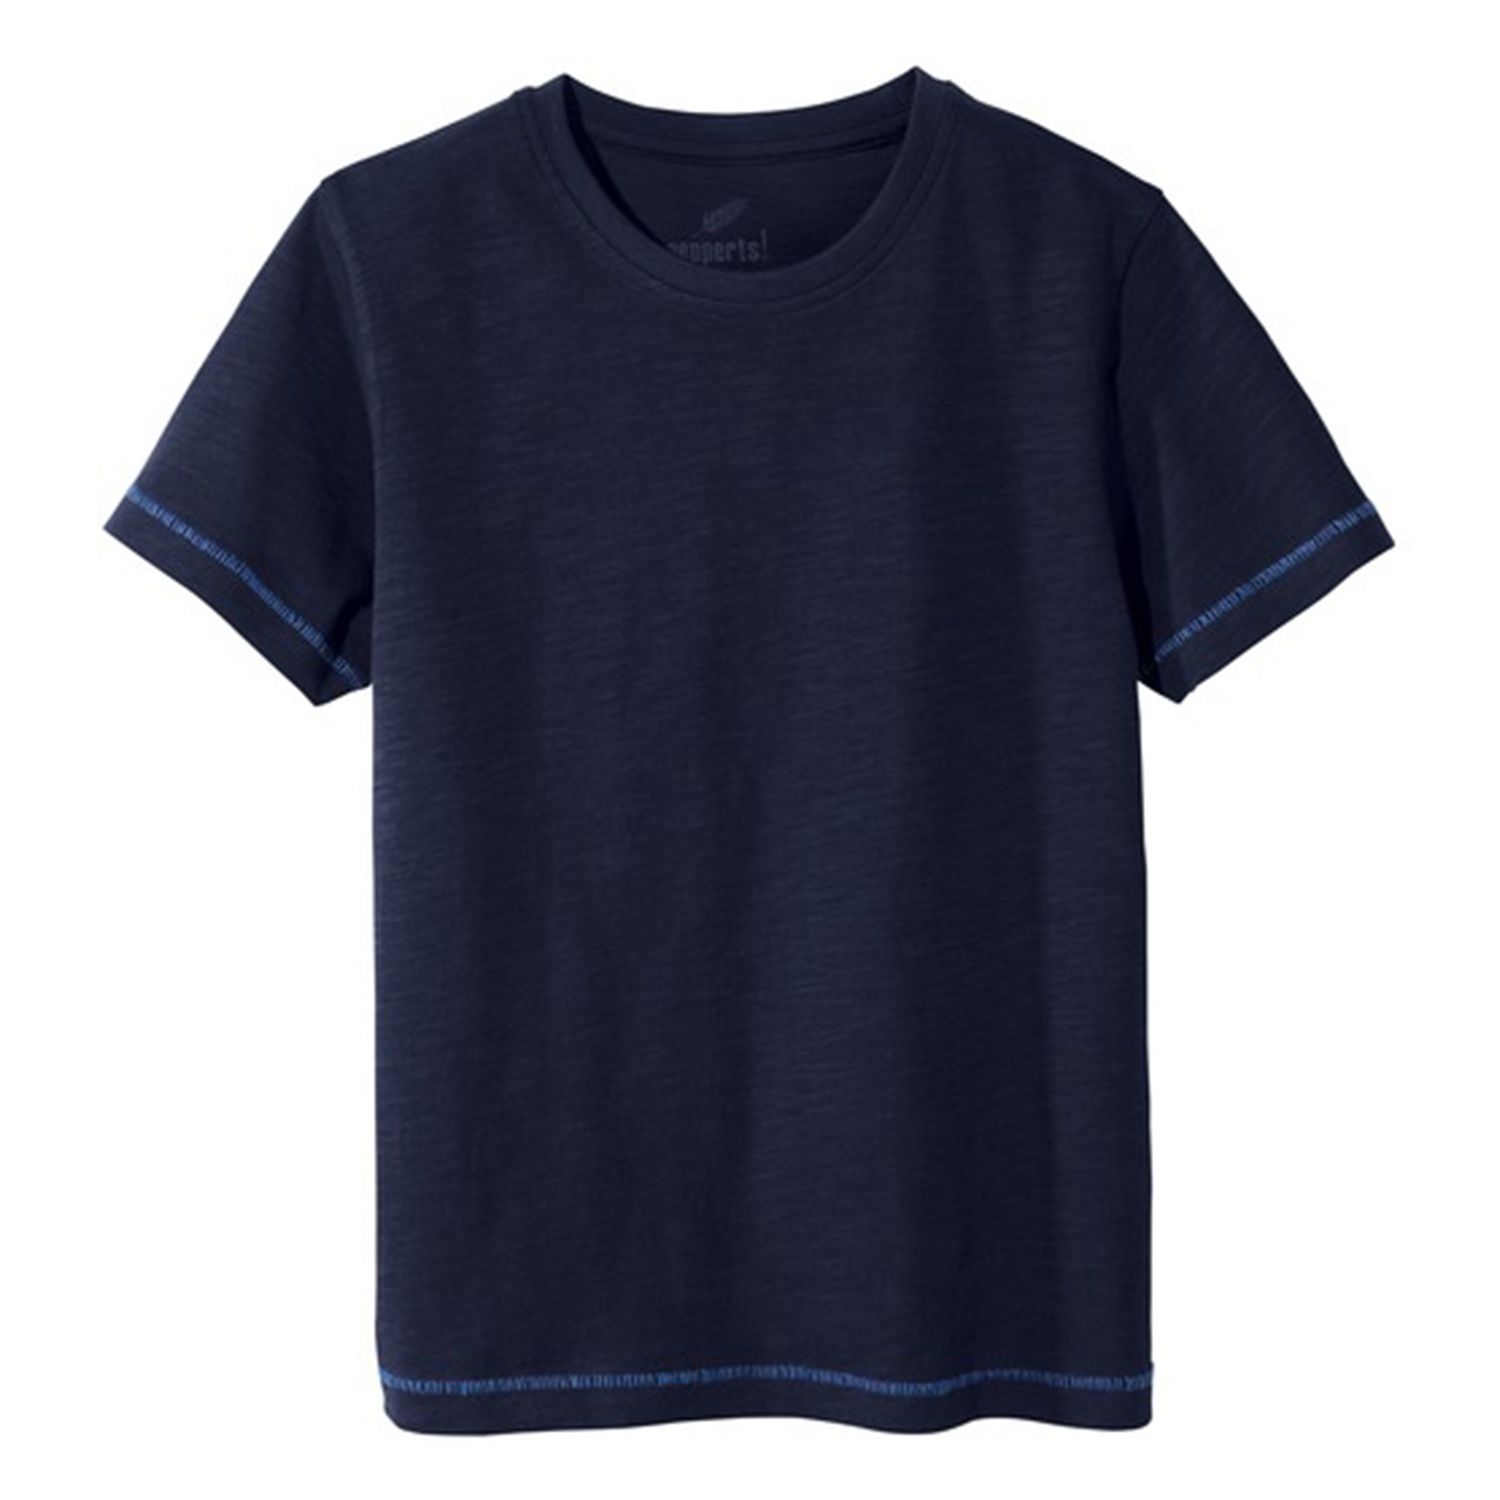 تی شرت آستین کوتاه پسرانه پیپرتس مدل ساده کدSIm2023 رنگ سرمه ای